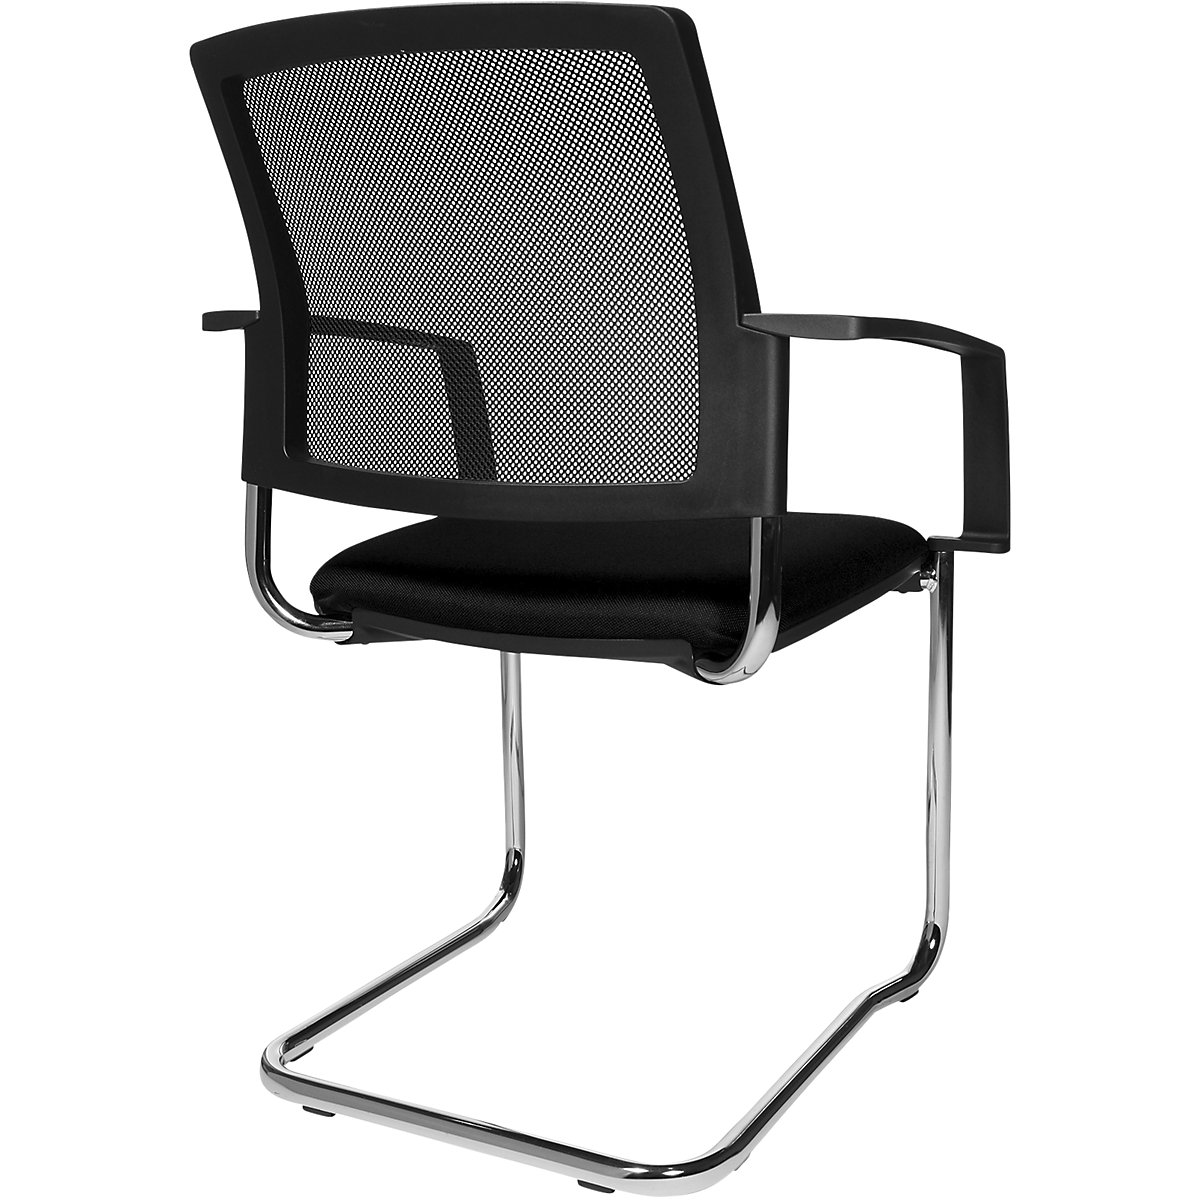 Složiva stolica s mrežastim naslonom – Topstar (Prikaz proizvoda 10)